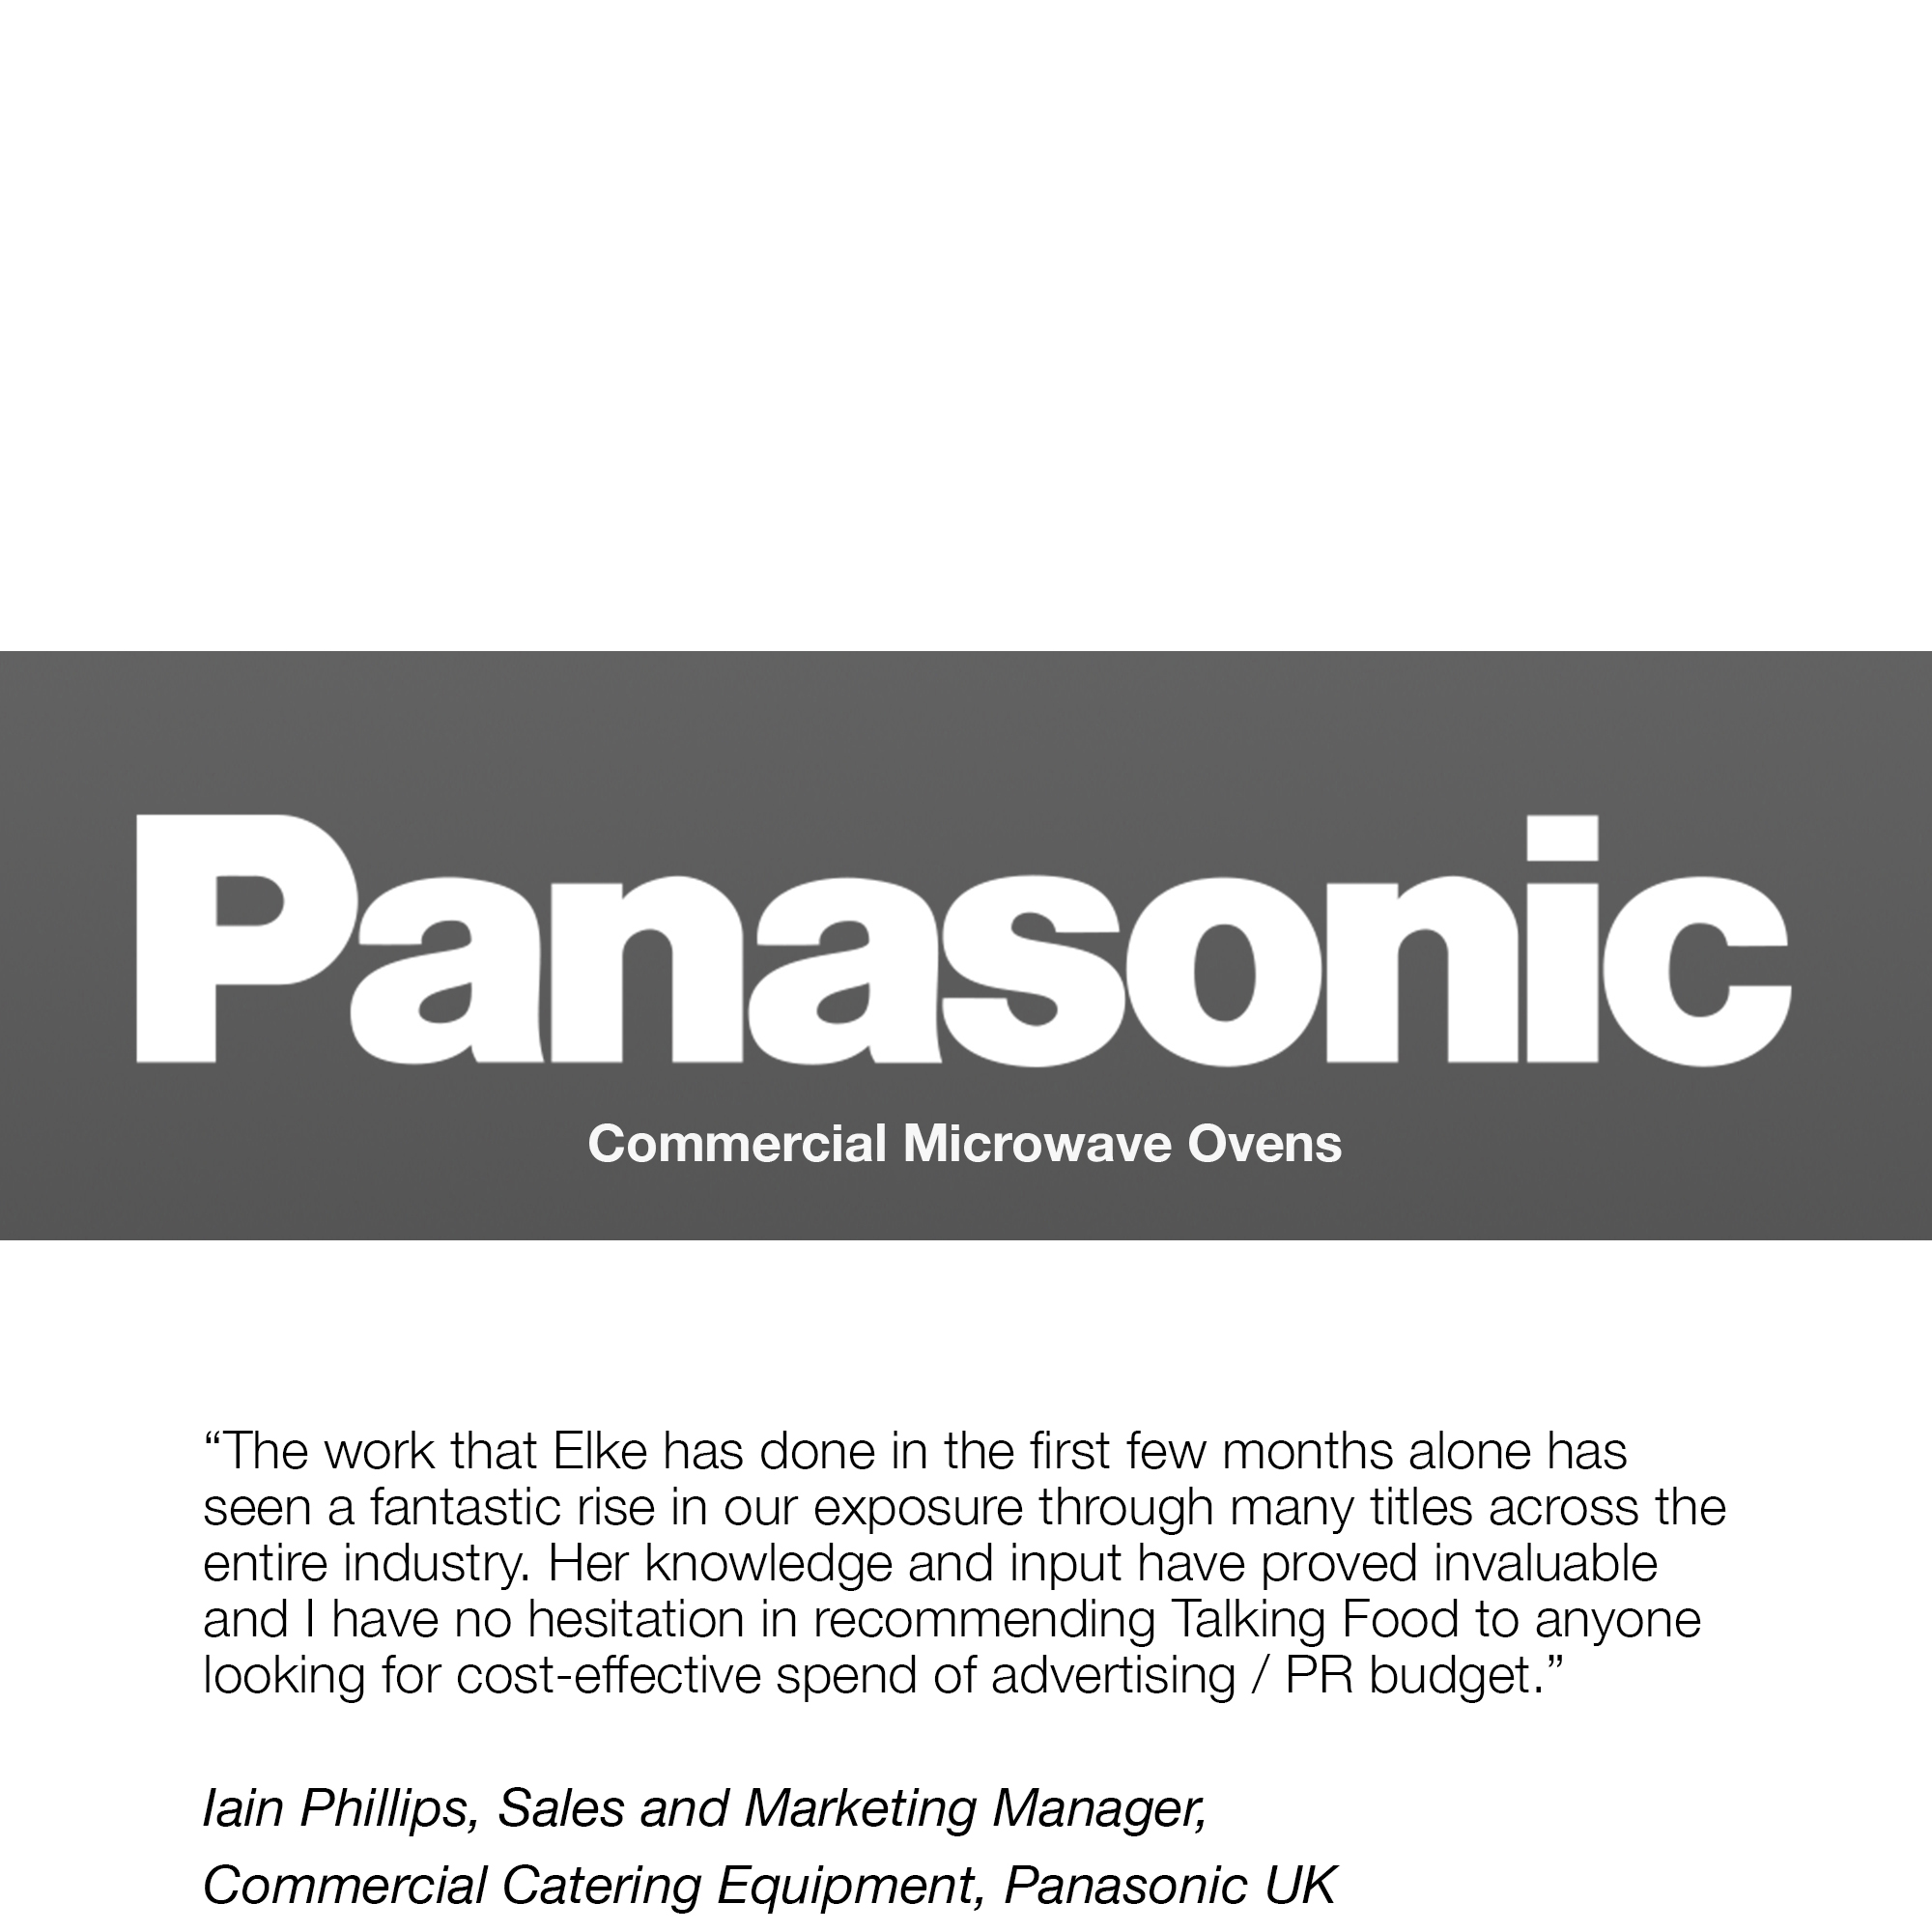 Panasonic quote.jpg